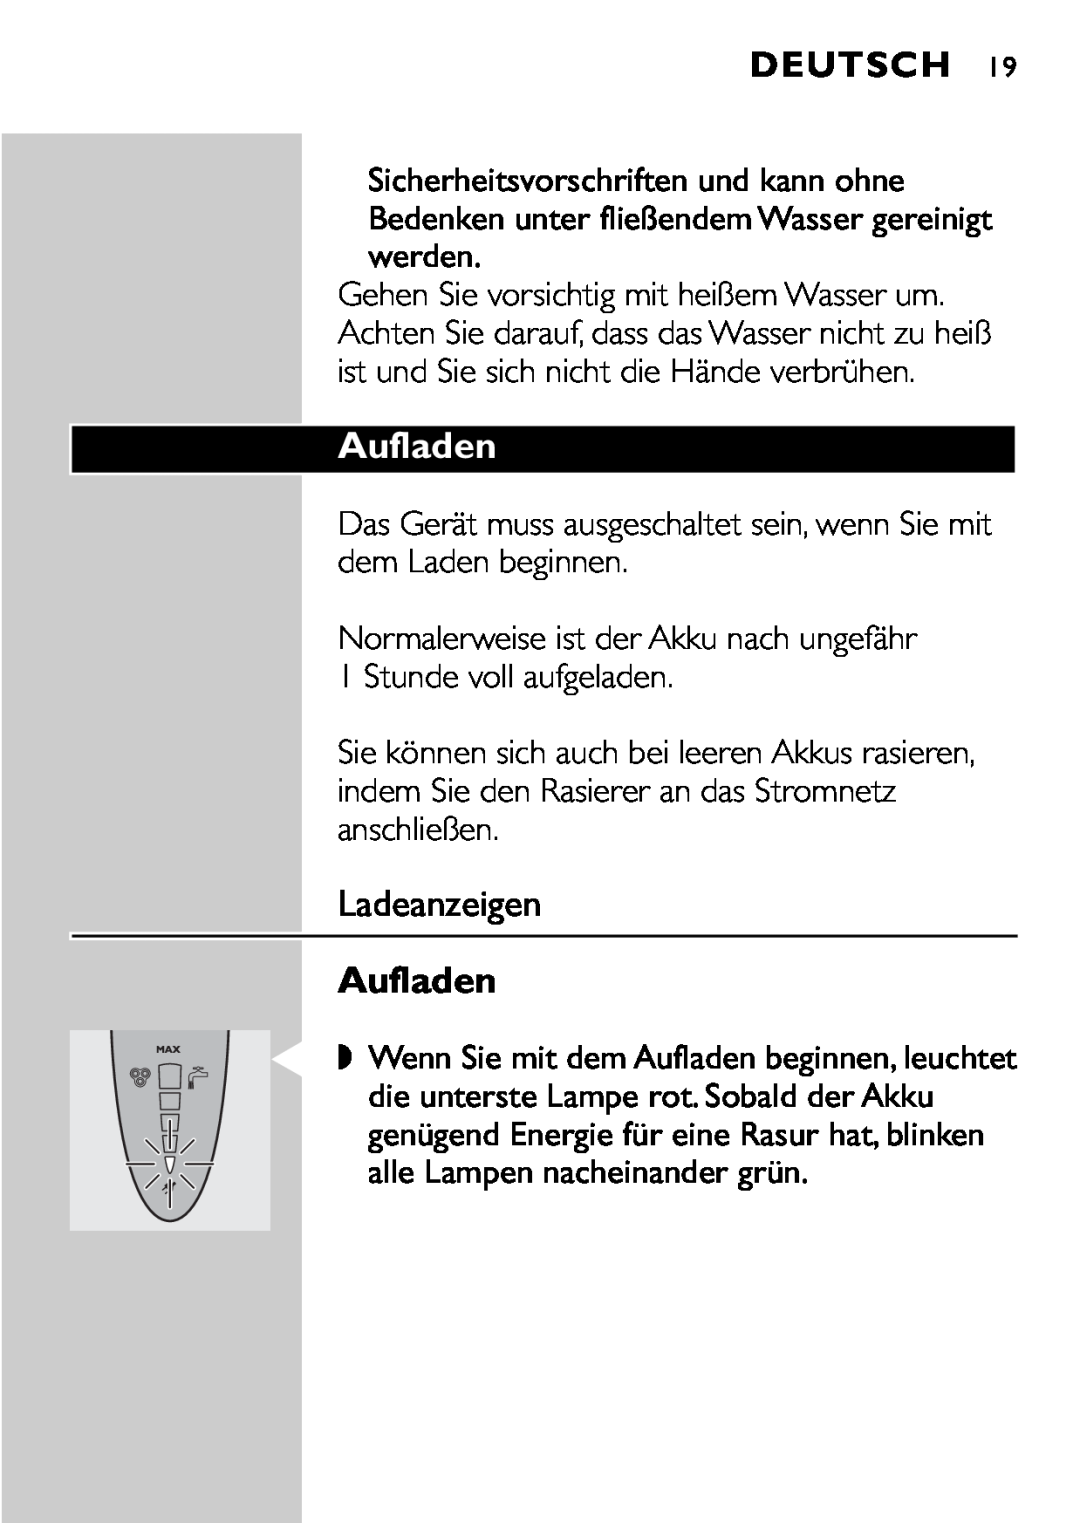 Philips HQ9161, HQ9160 manual Aufladen, Ladeanzeigen, Deutsch 